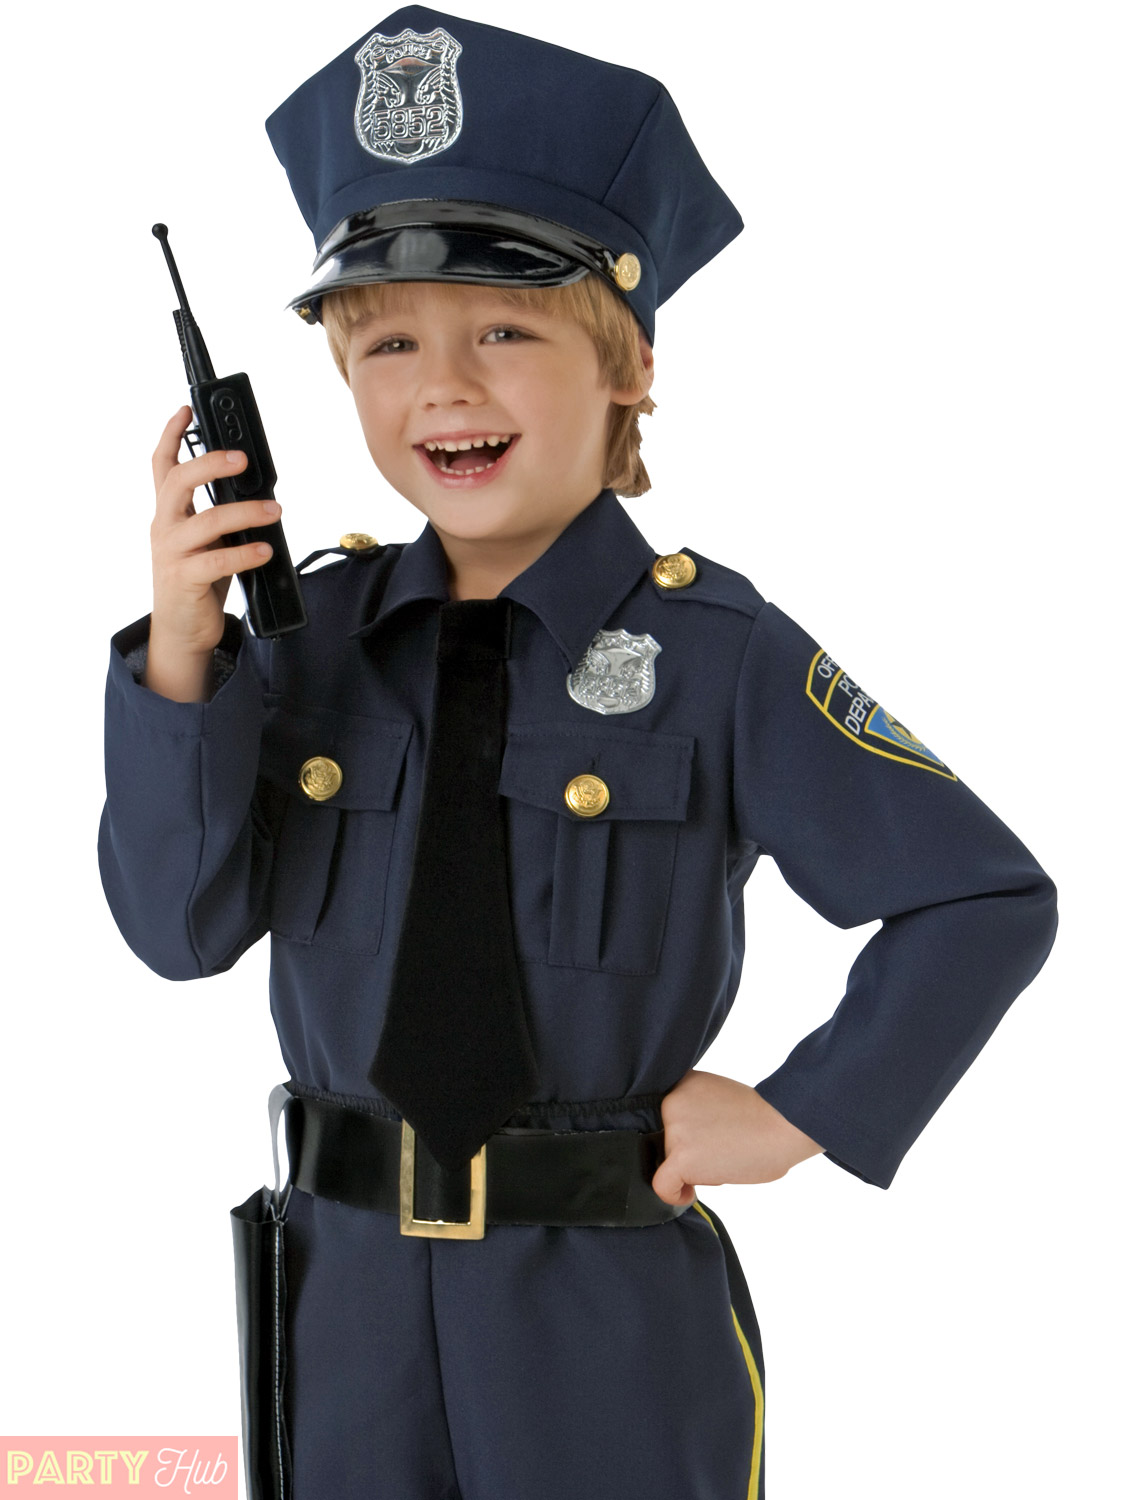 Ребенок в костюме милиционера